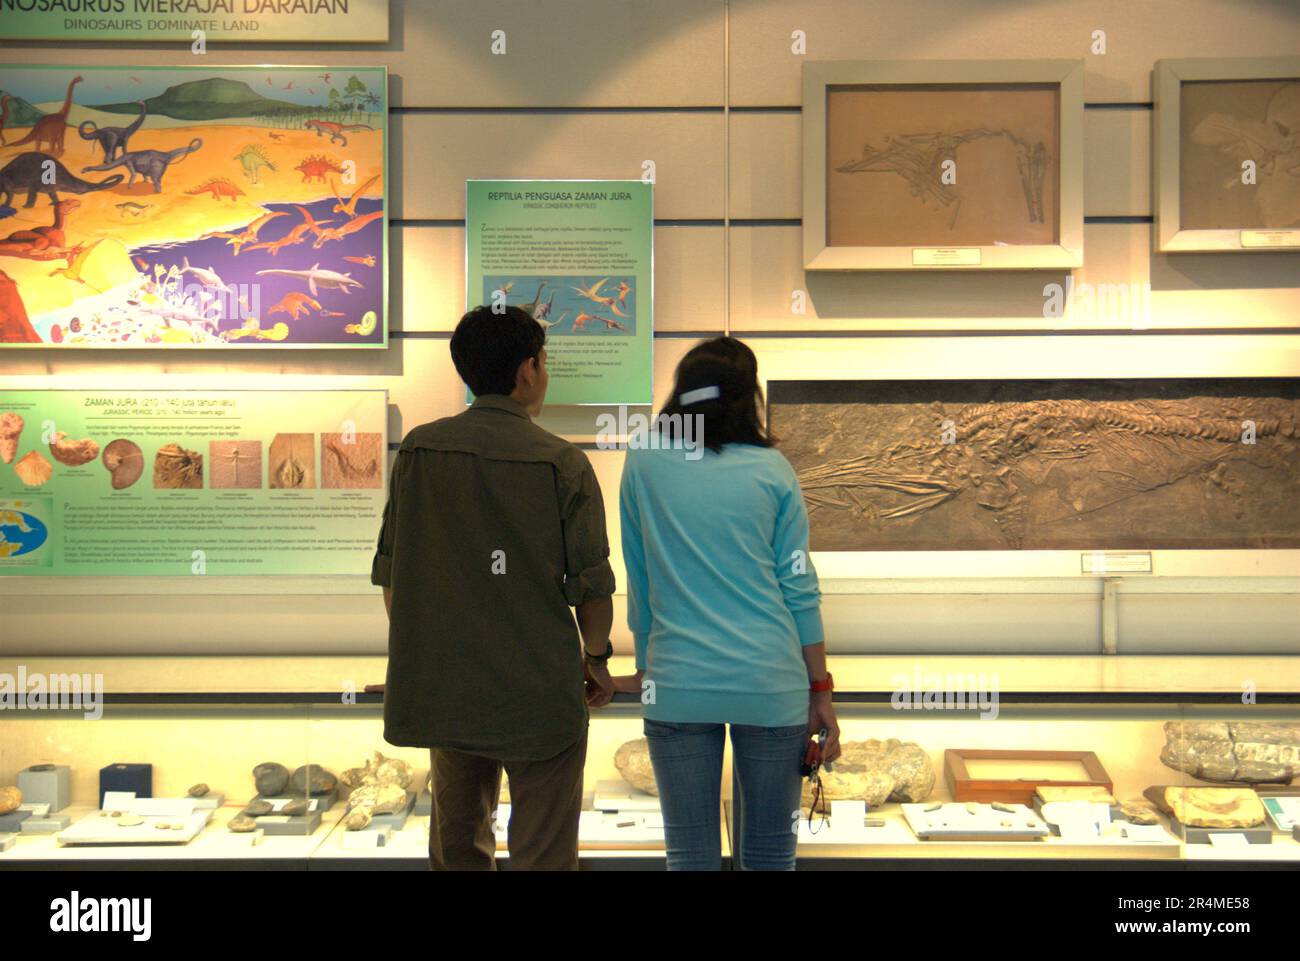 Zwei Museumsbesucher widmen sich den Informationstafeln im Museum Geologi (Geologiemuseum) in Bandung, West Java, Indonesien. Stockfoto